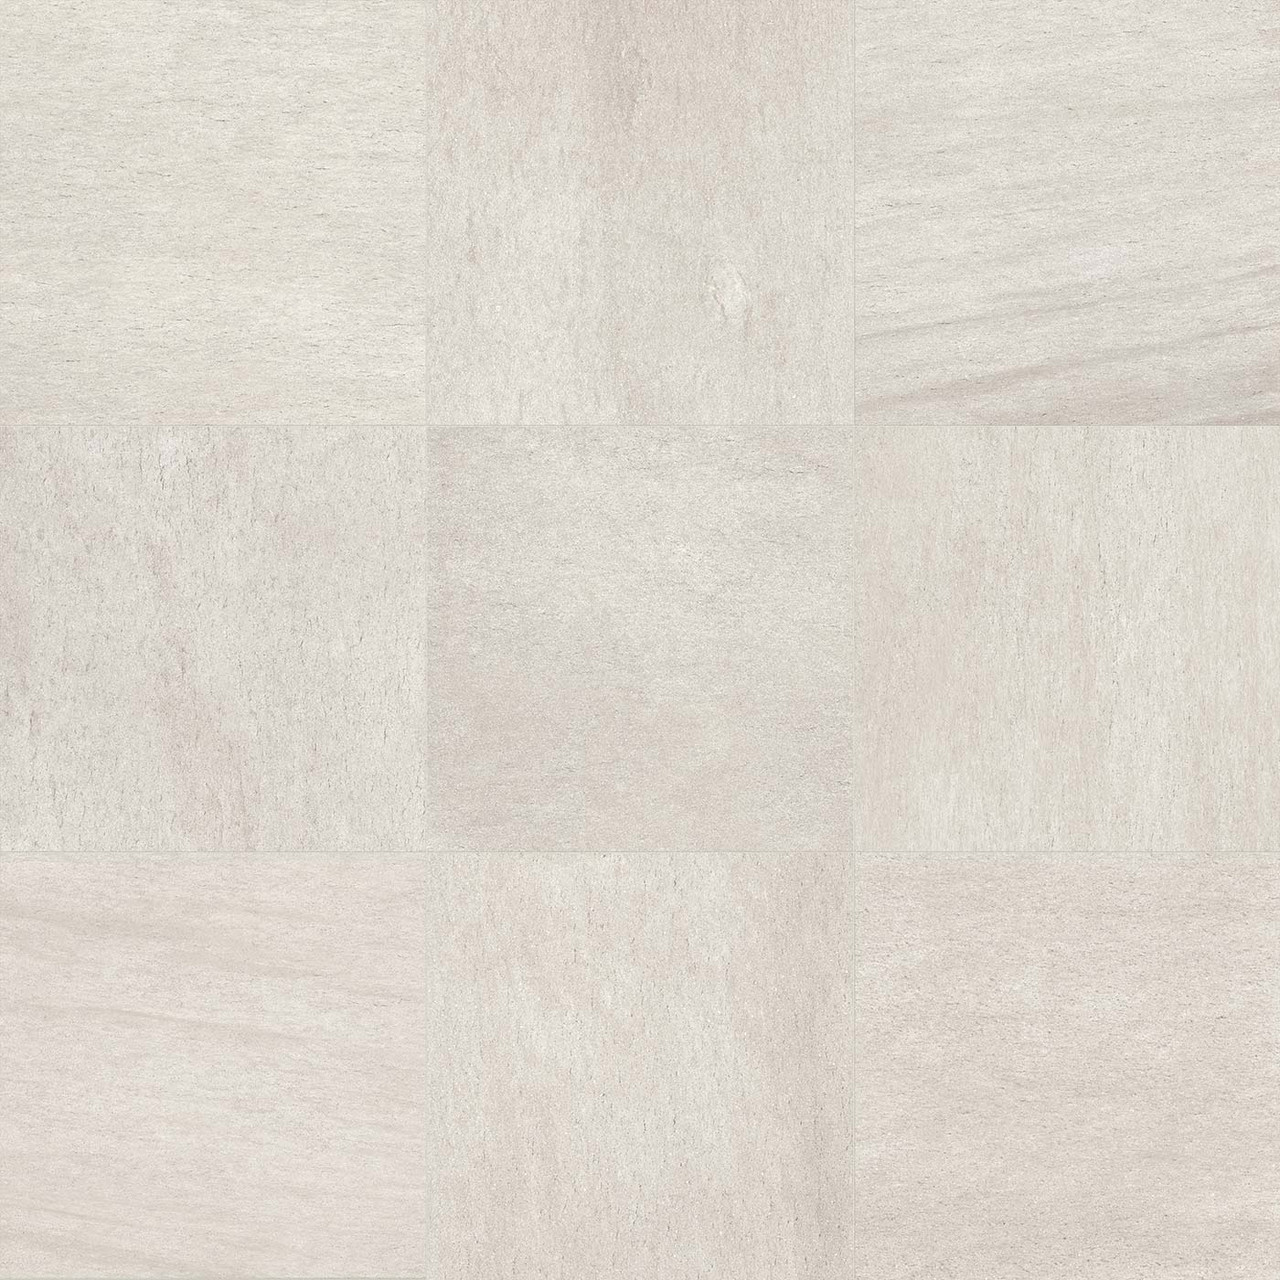 Basalt White 12x24 | Porcelain tile | Builder Grade